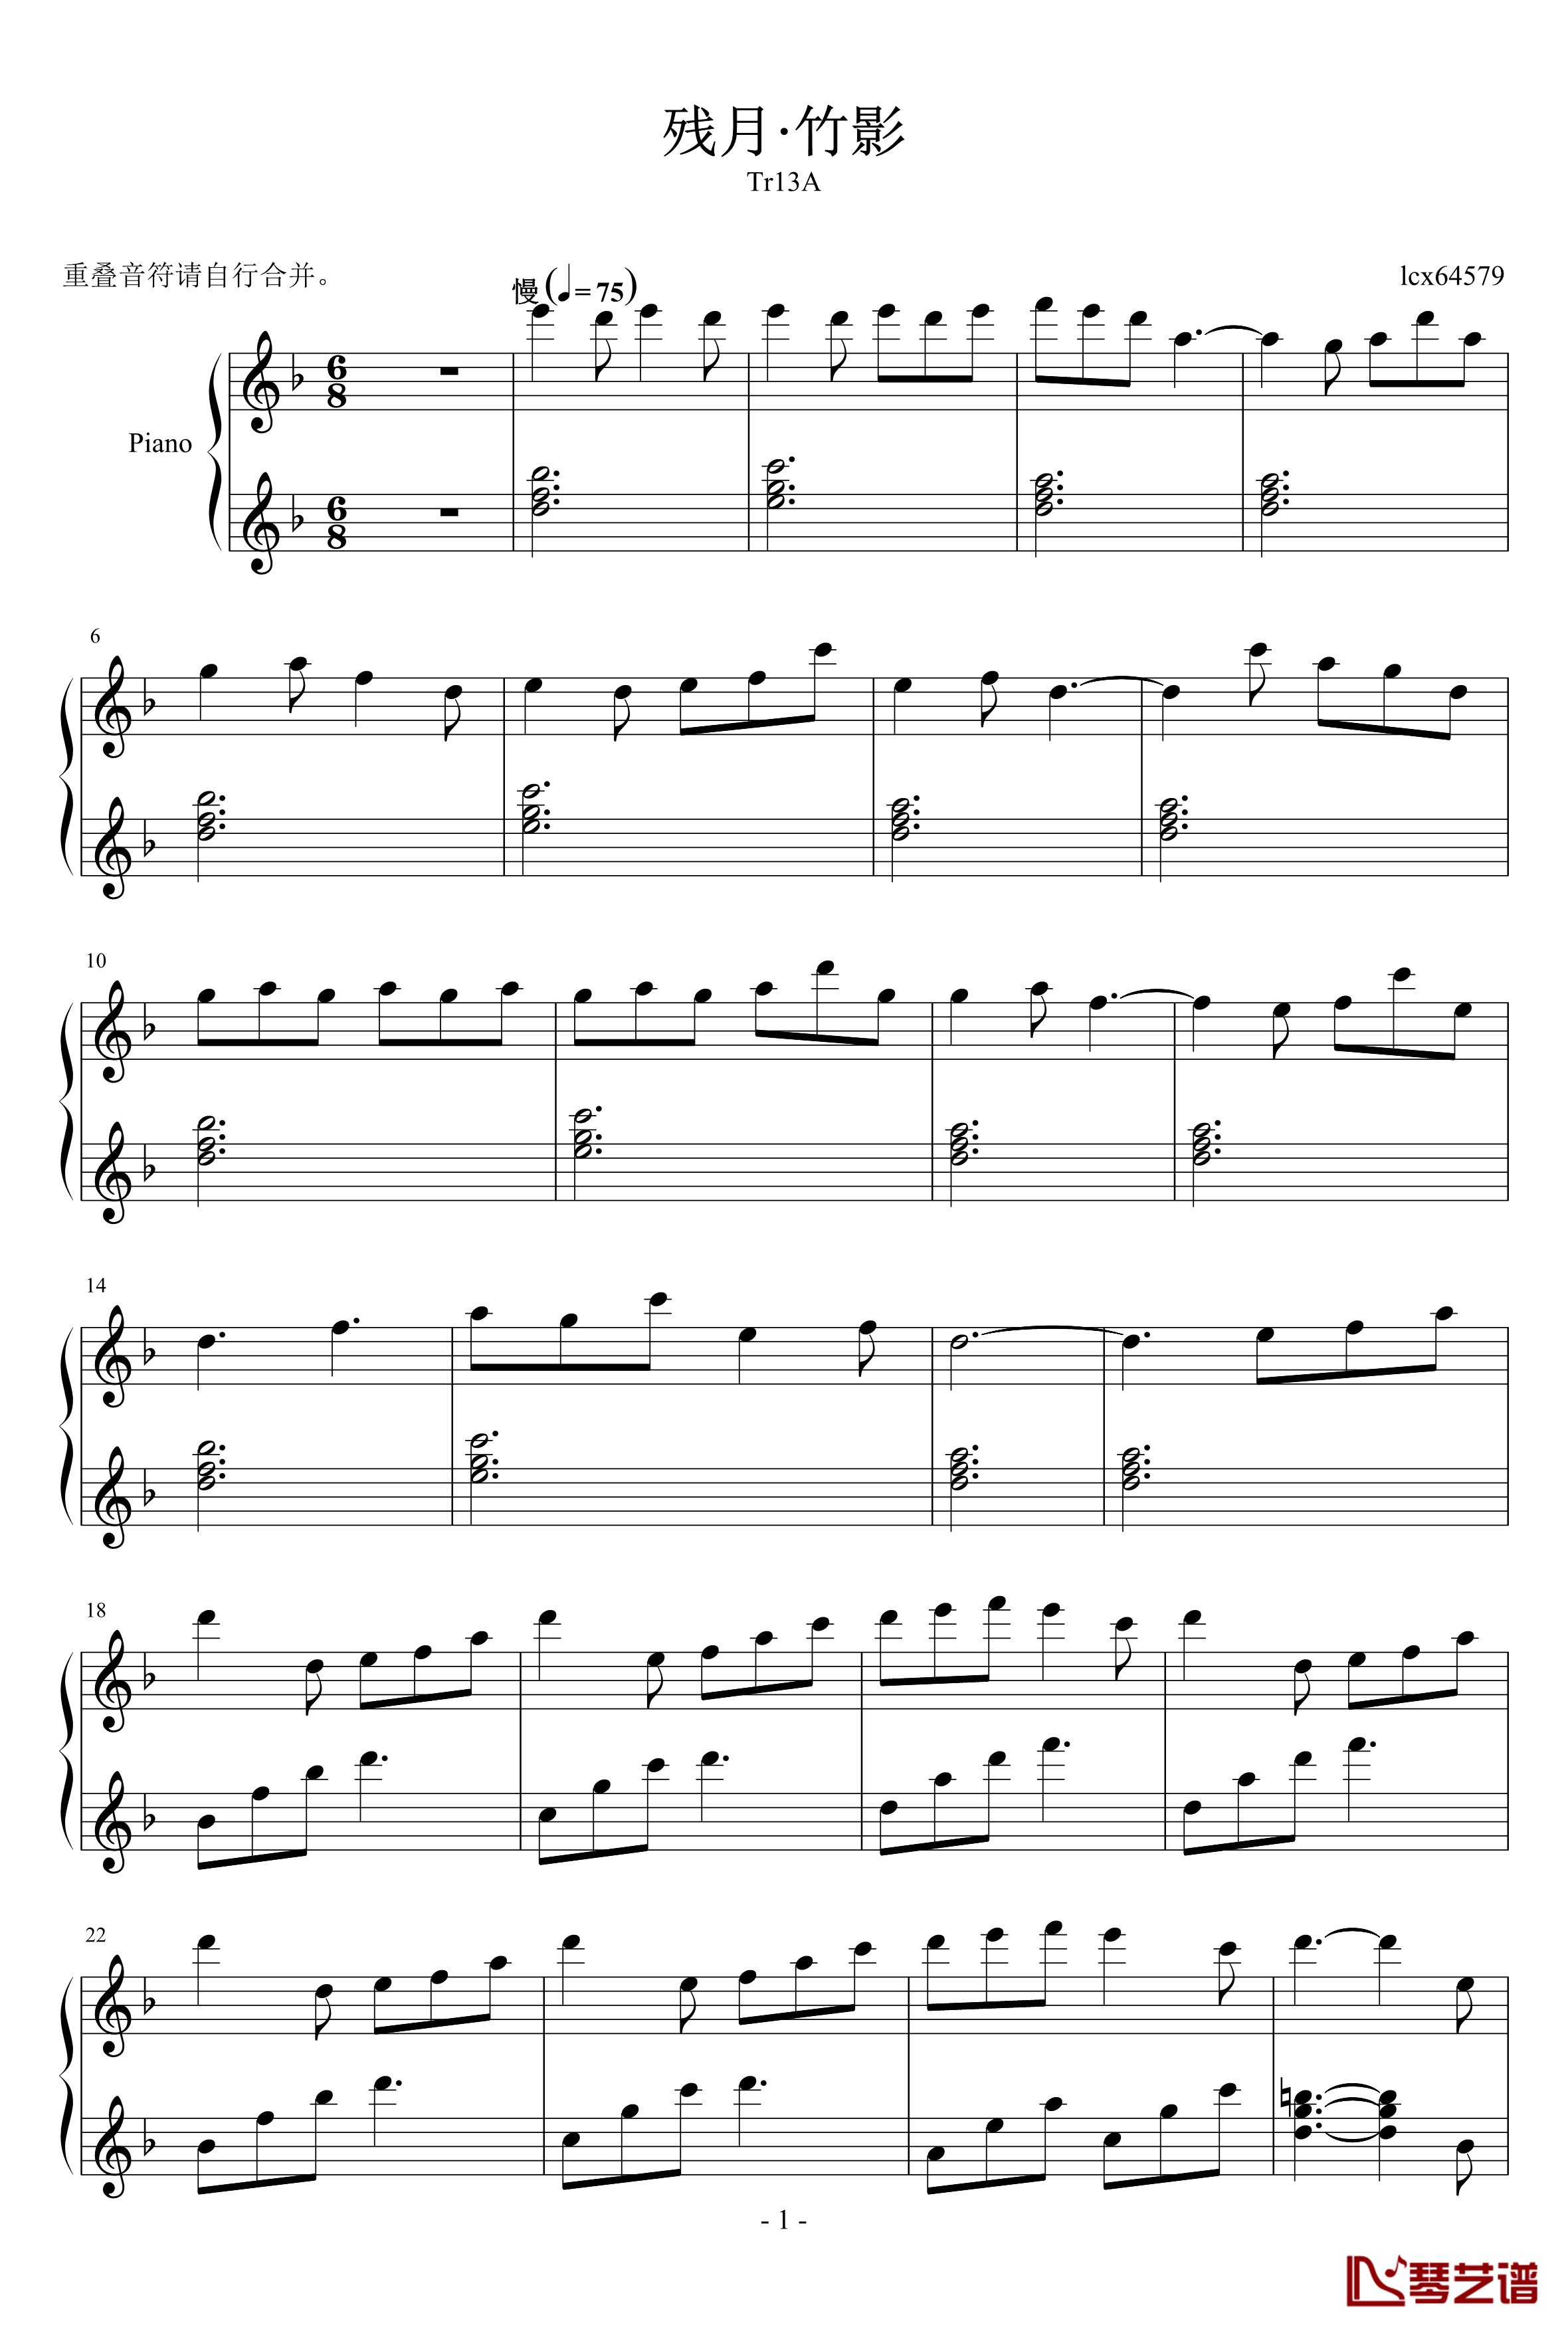 残月竹影钢琴谱-适合大晚上的听-lcx64579